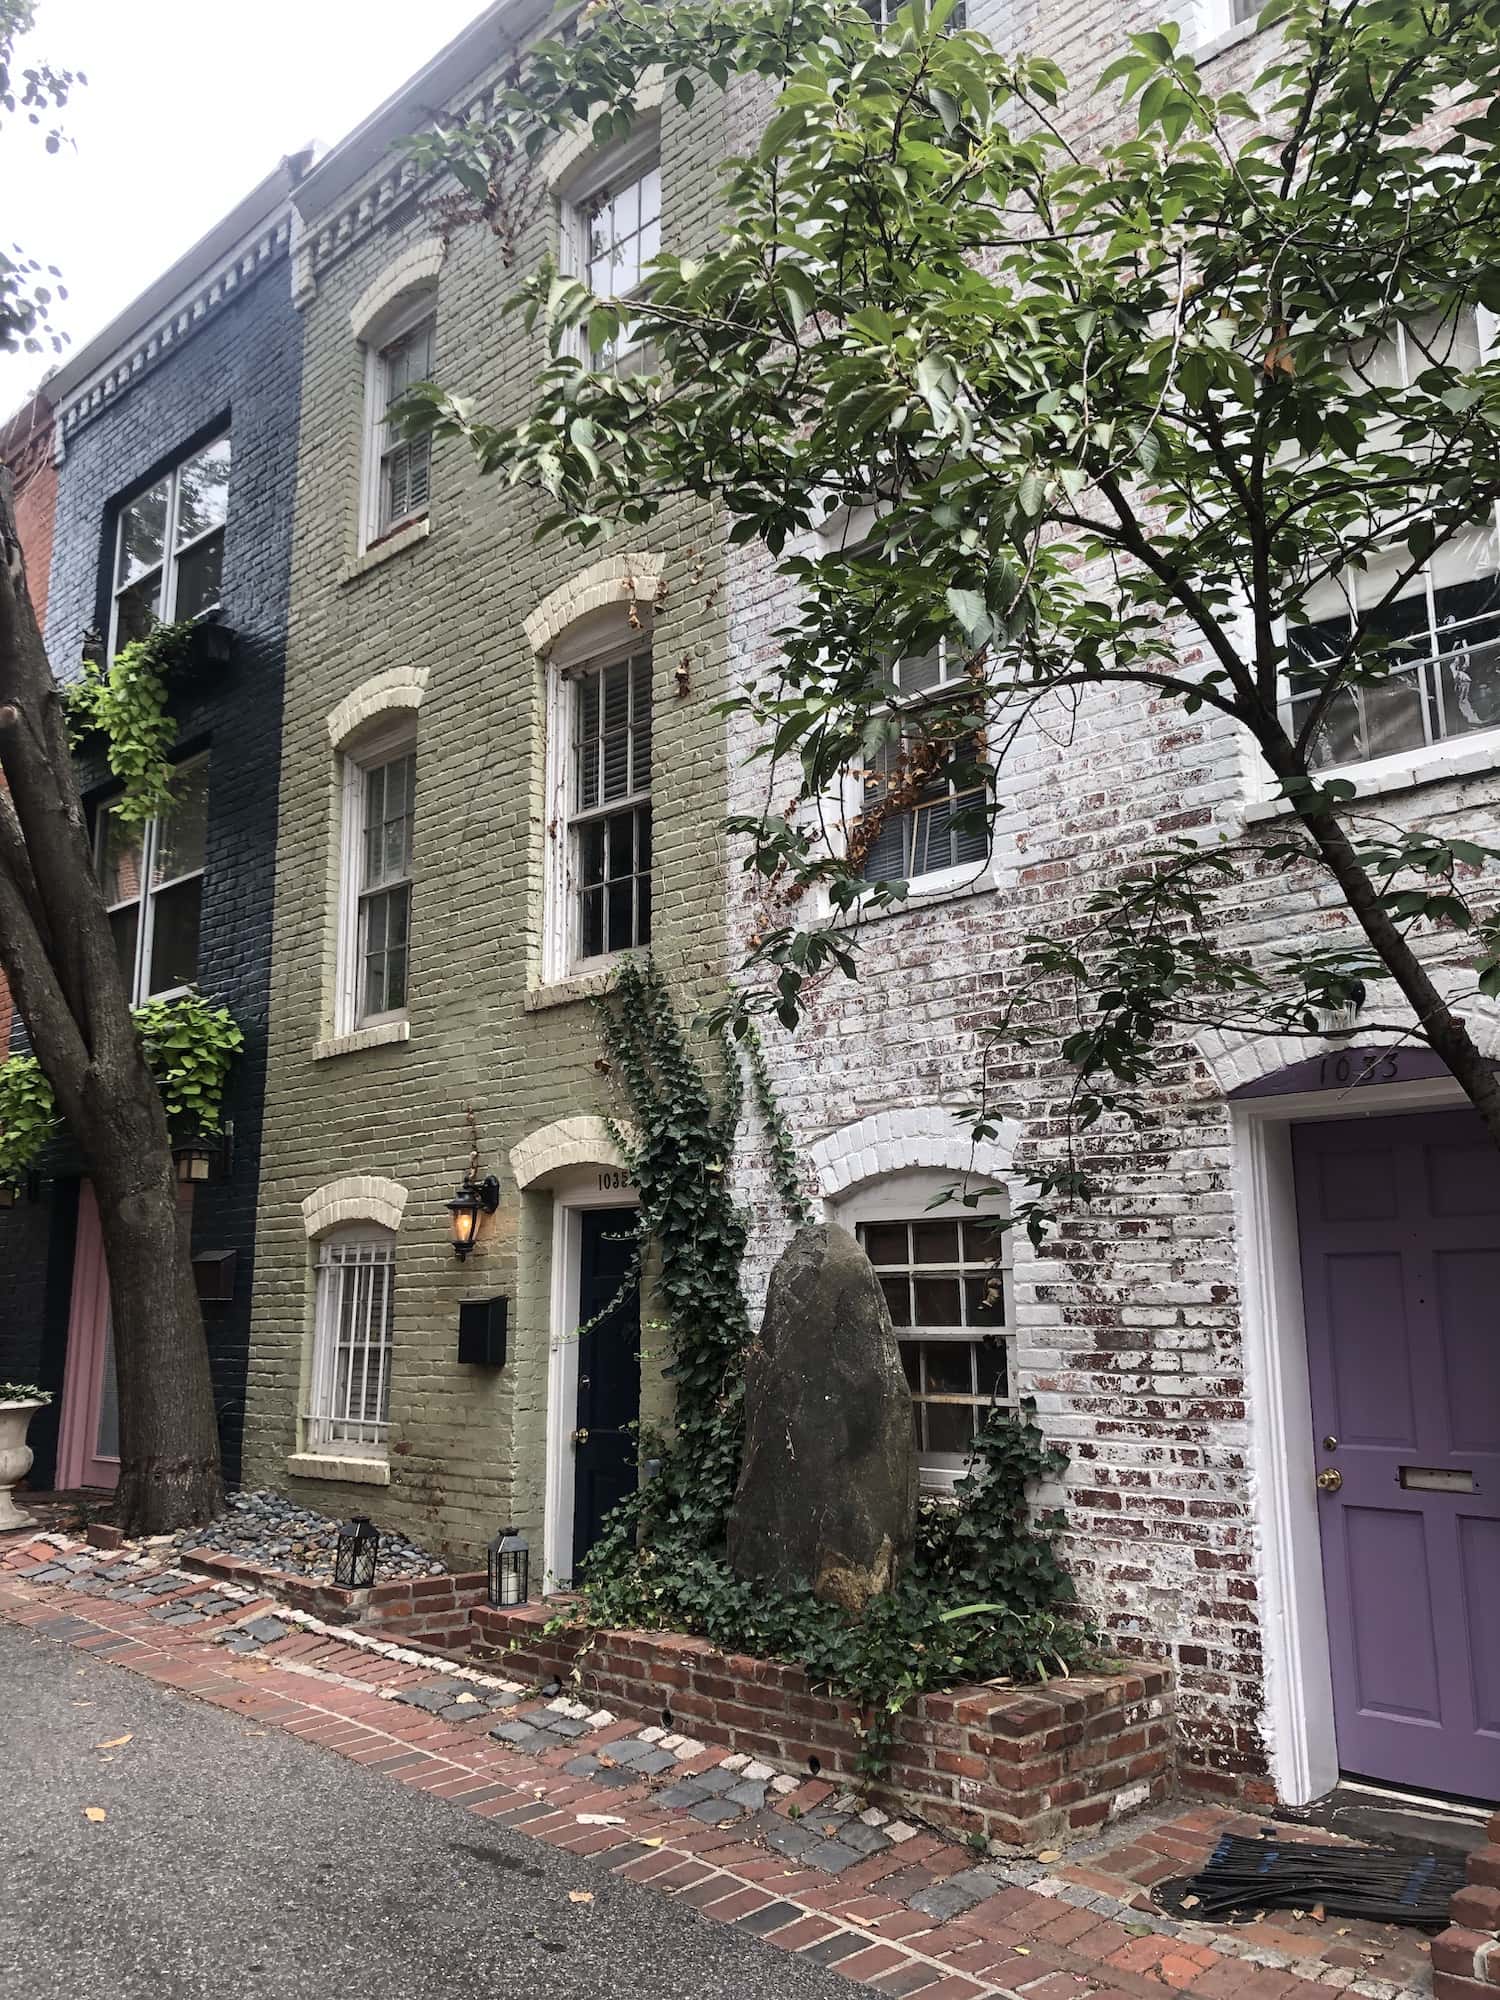 Houses in Georgetown